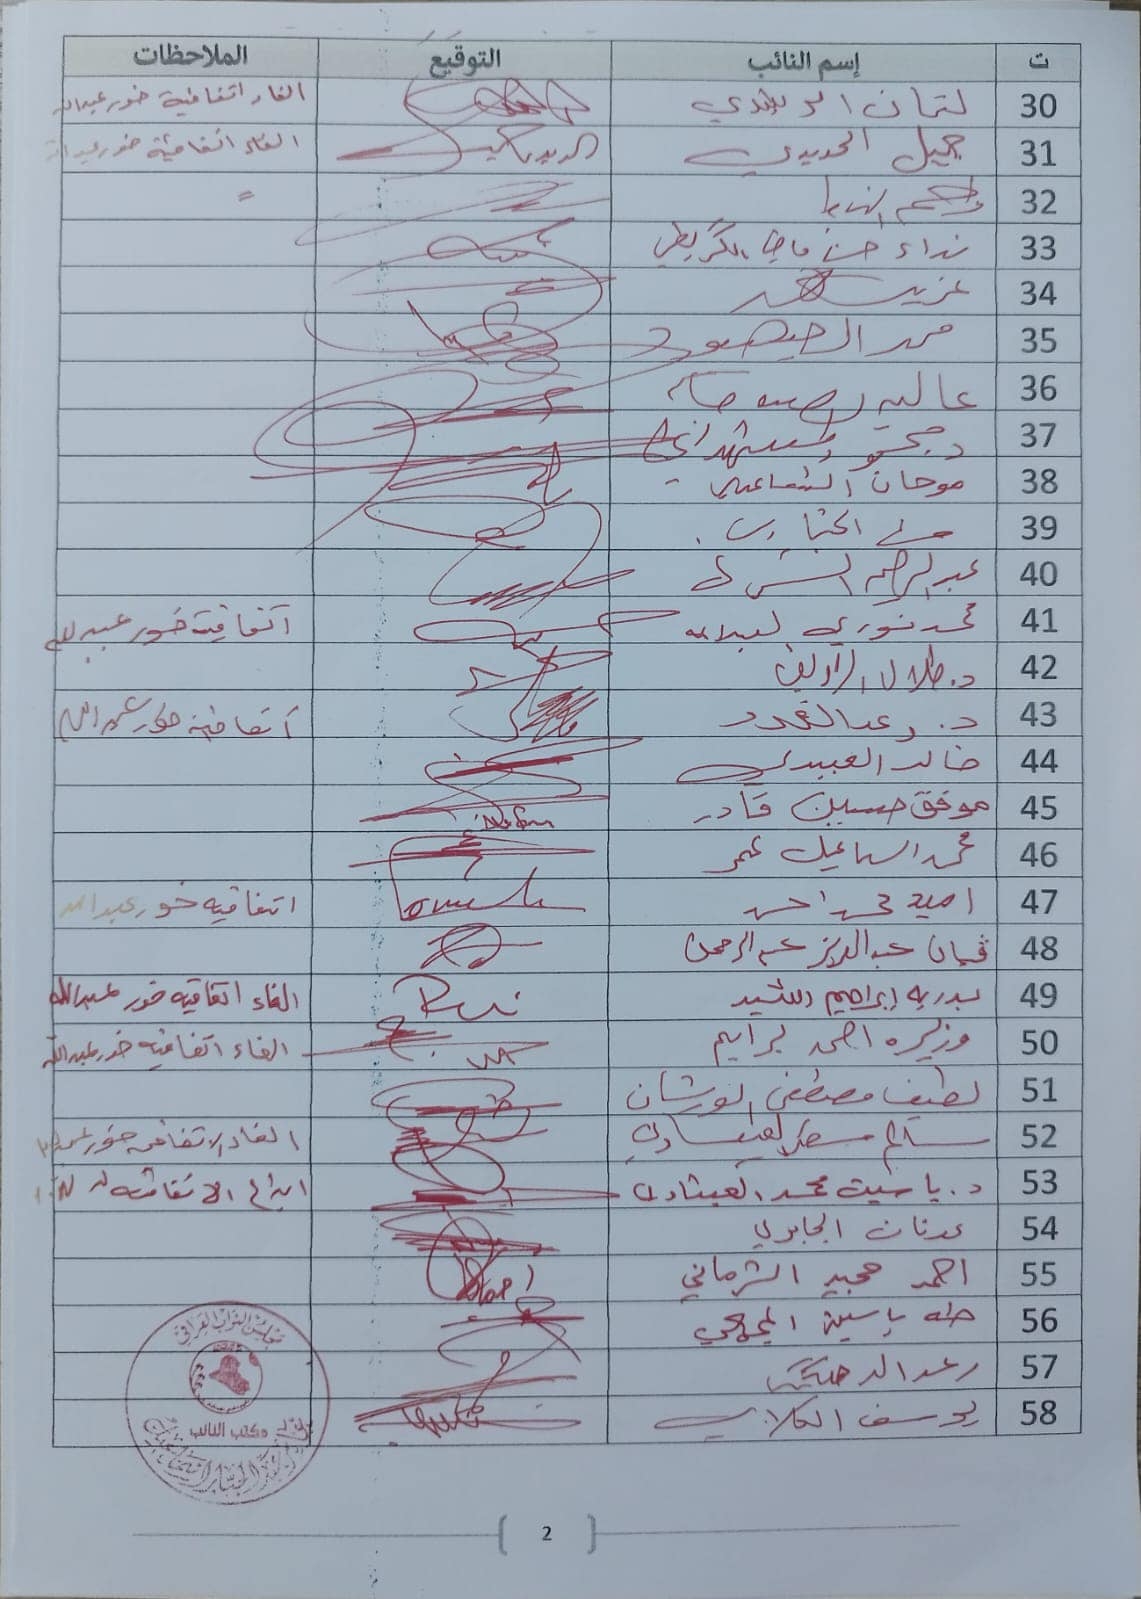 بالوثائق: 170 نائب يدعمون قرار المحكمة الاتحادية بشان الغاء اتفاقية خور عبدالله